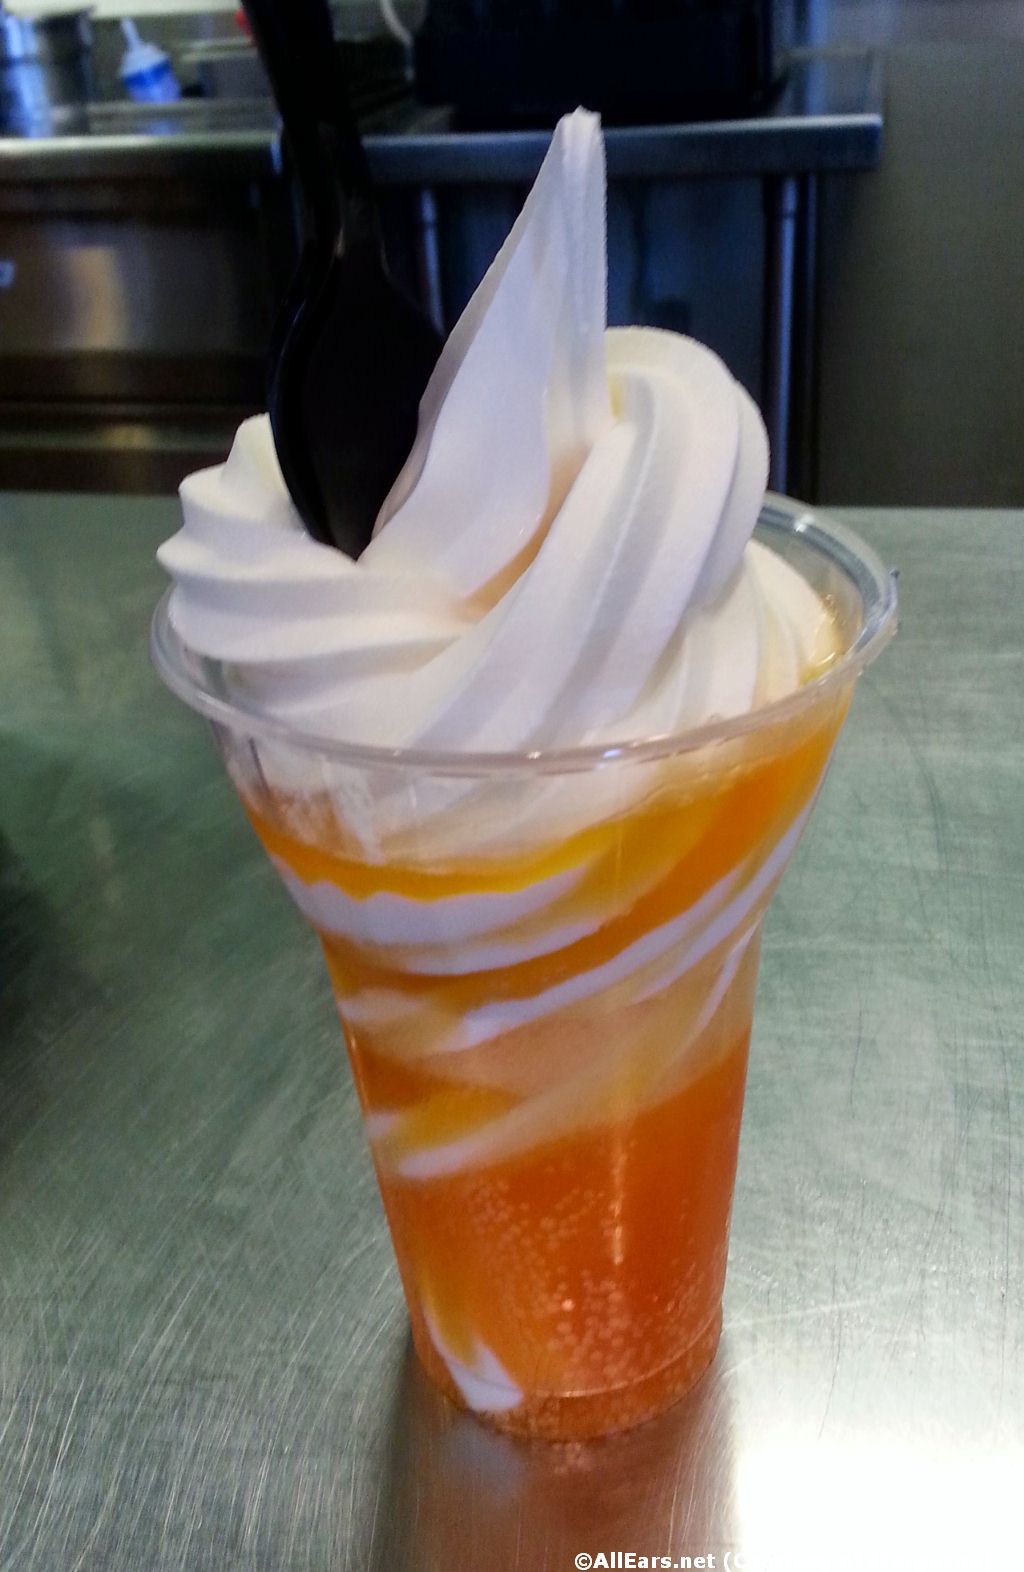 Ice Cream Float with Orange Soda